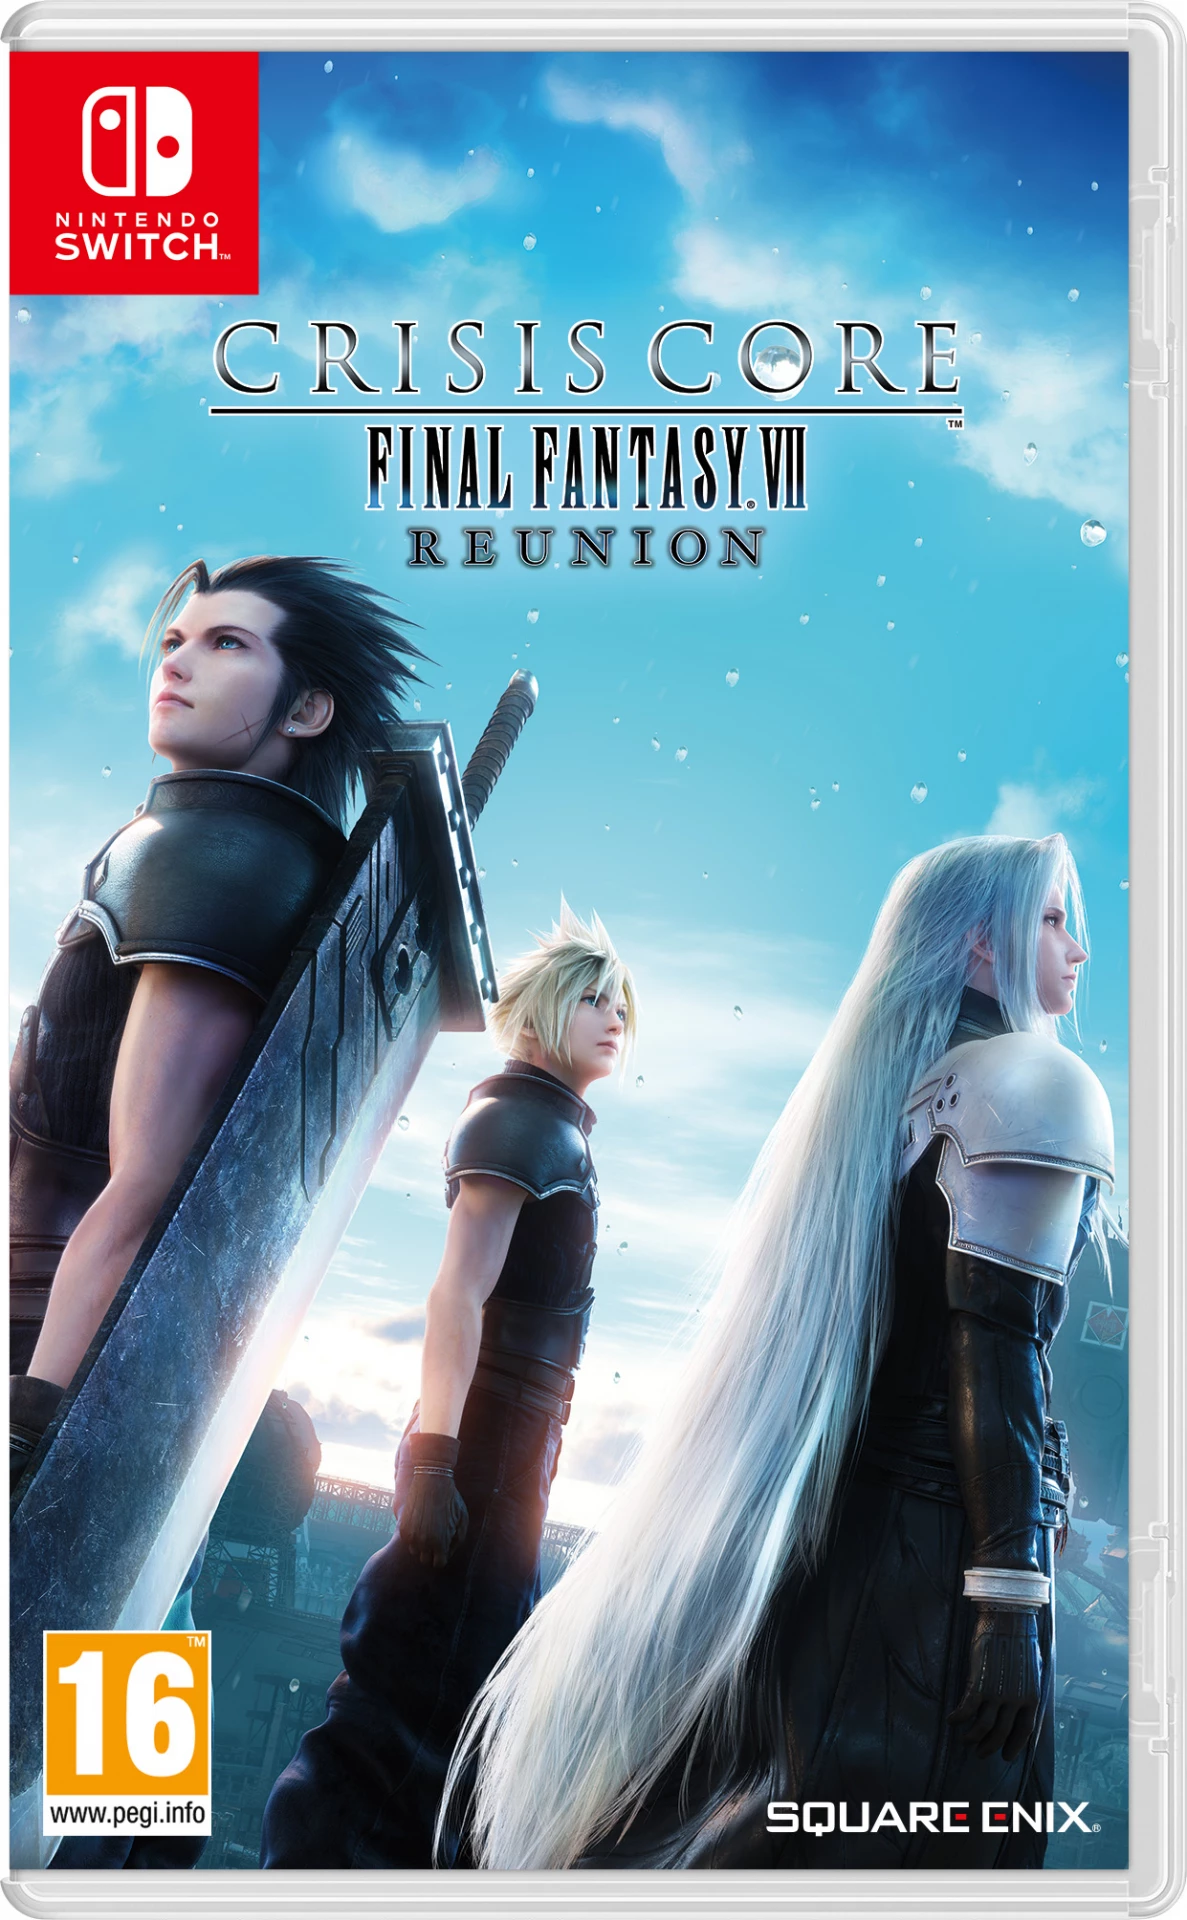 Crisis Core Final Fantasy 7 Reunion voor de Nintendo Switch preorder plaatsen op nedgame.nl